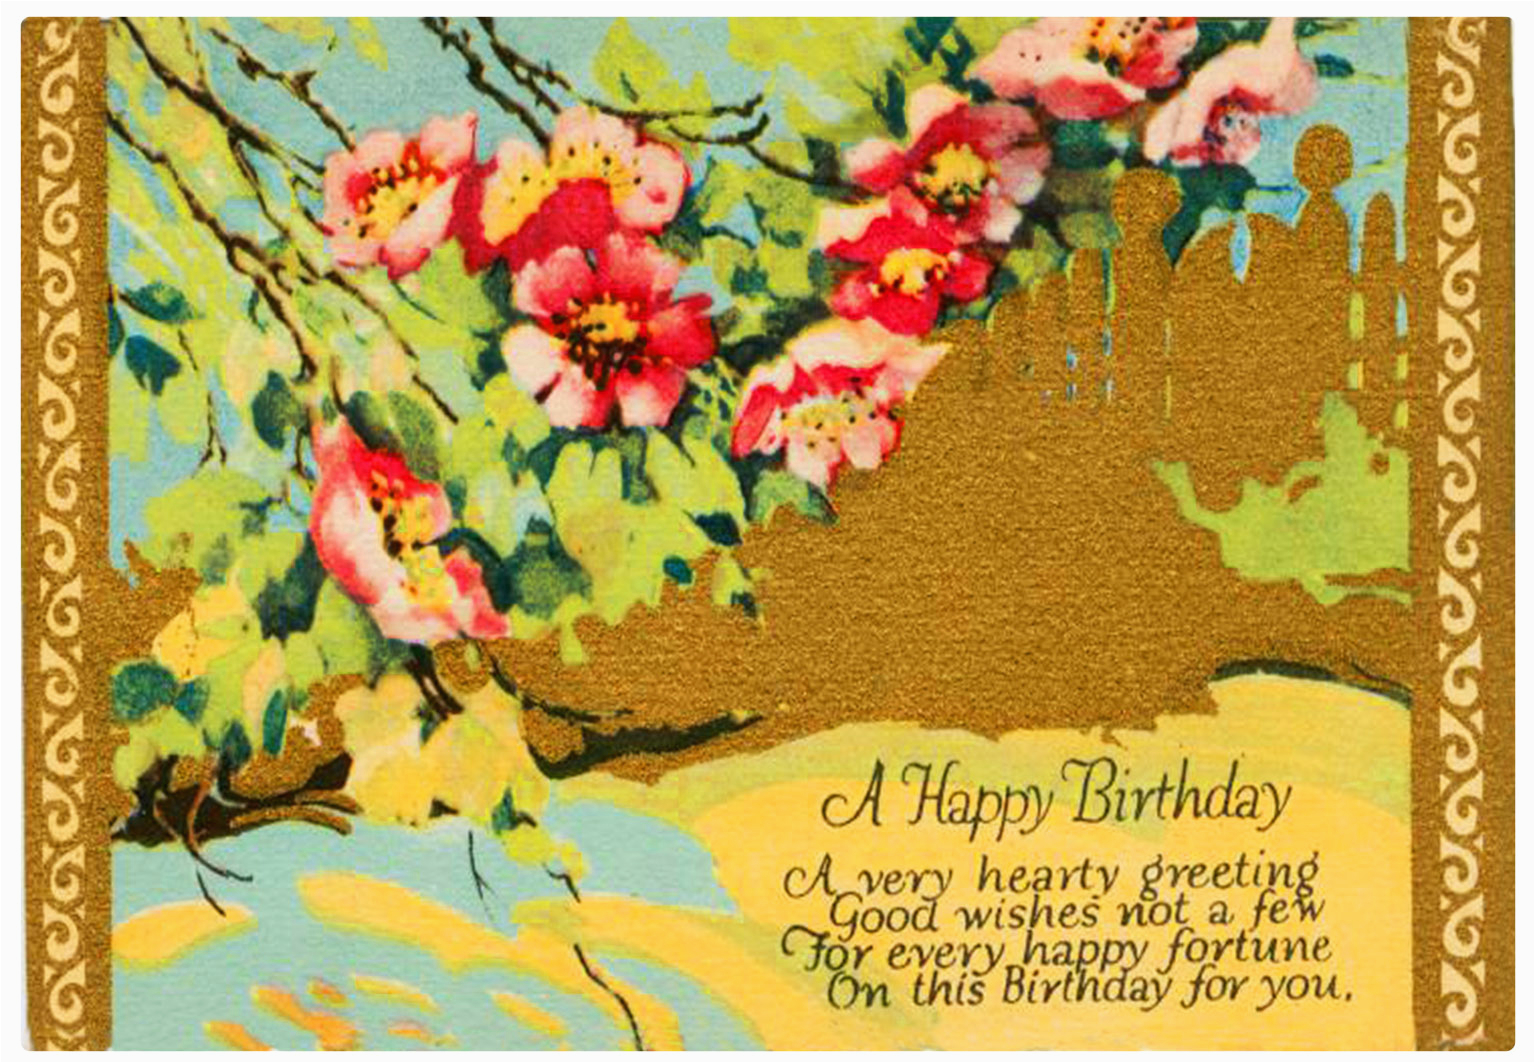 make-your-own-birthday-card-free-printable-birthdaybuzz